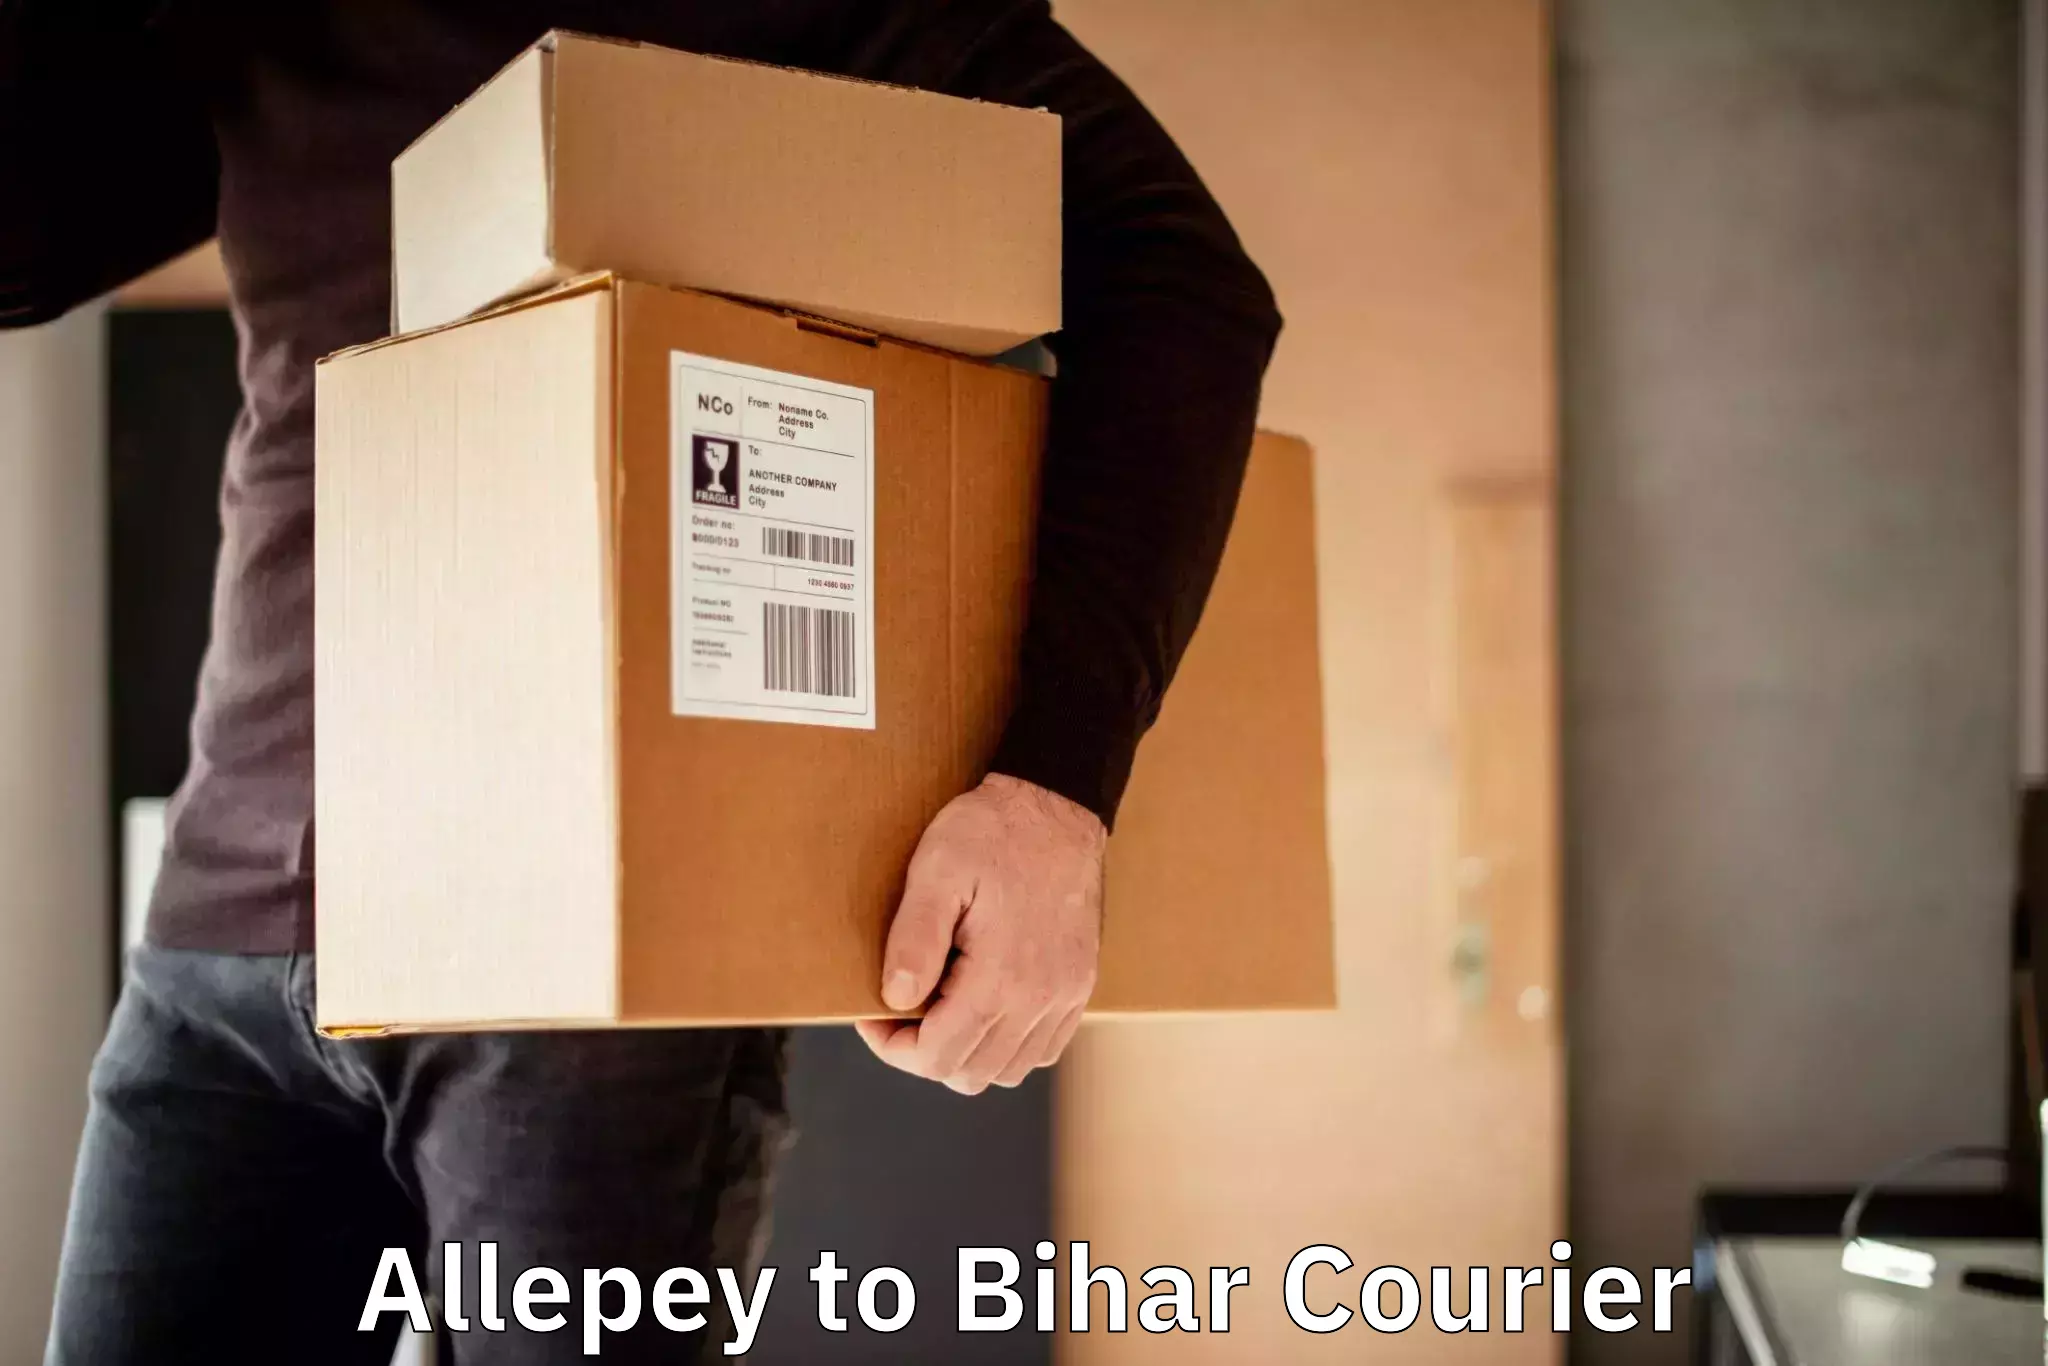 Bulk shipment Allepey to Buxar